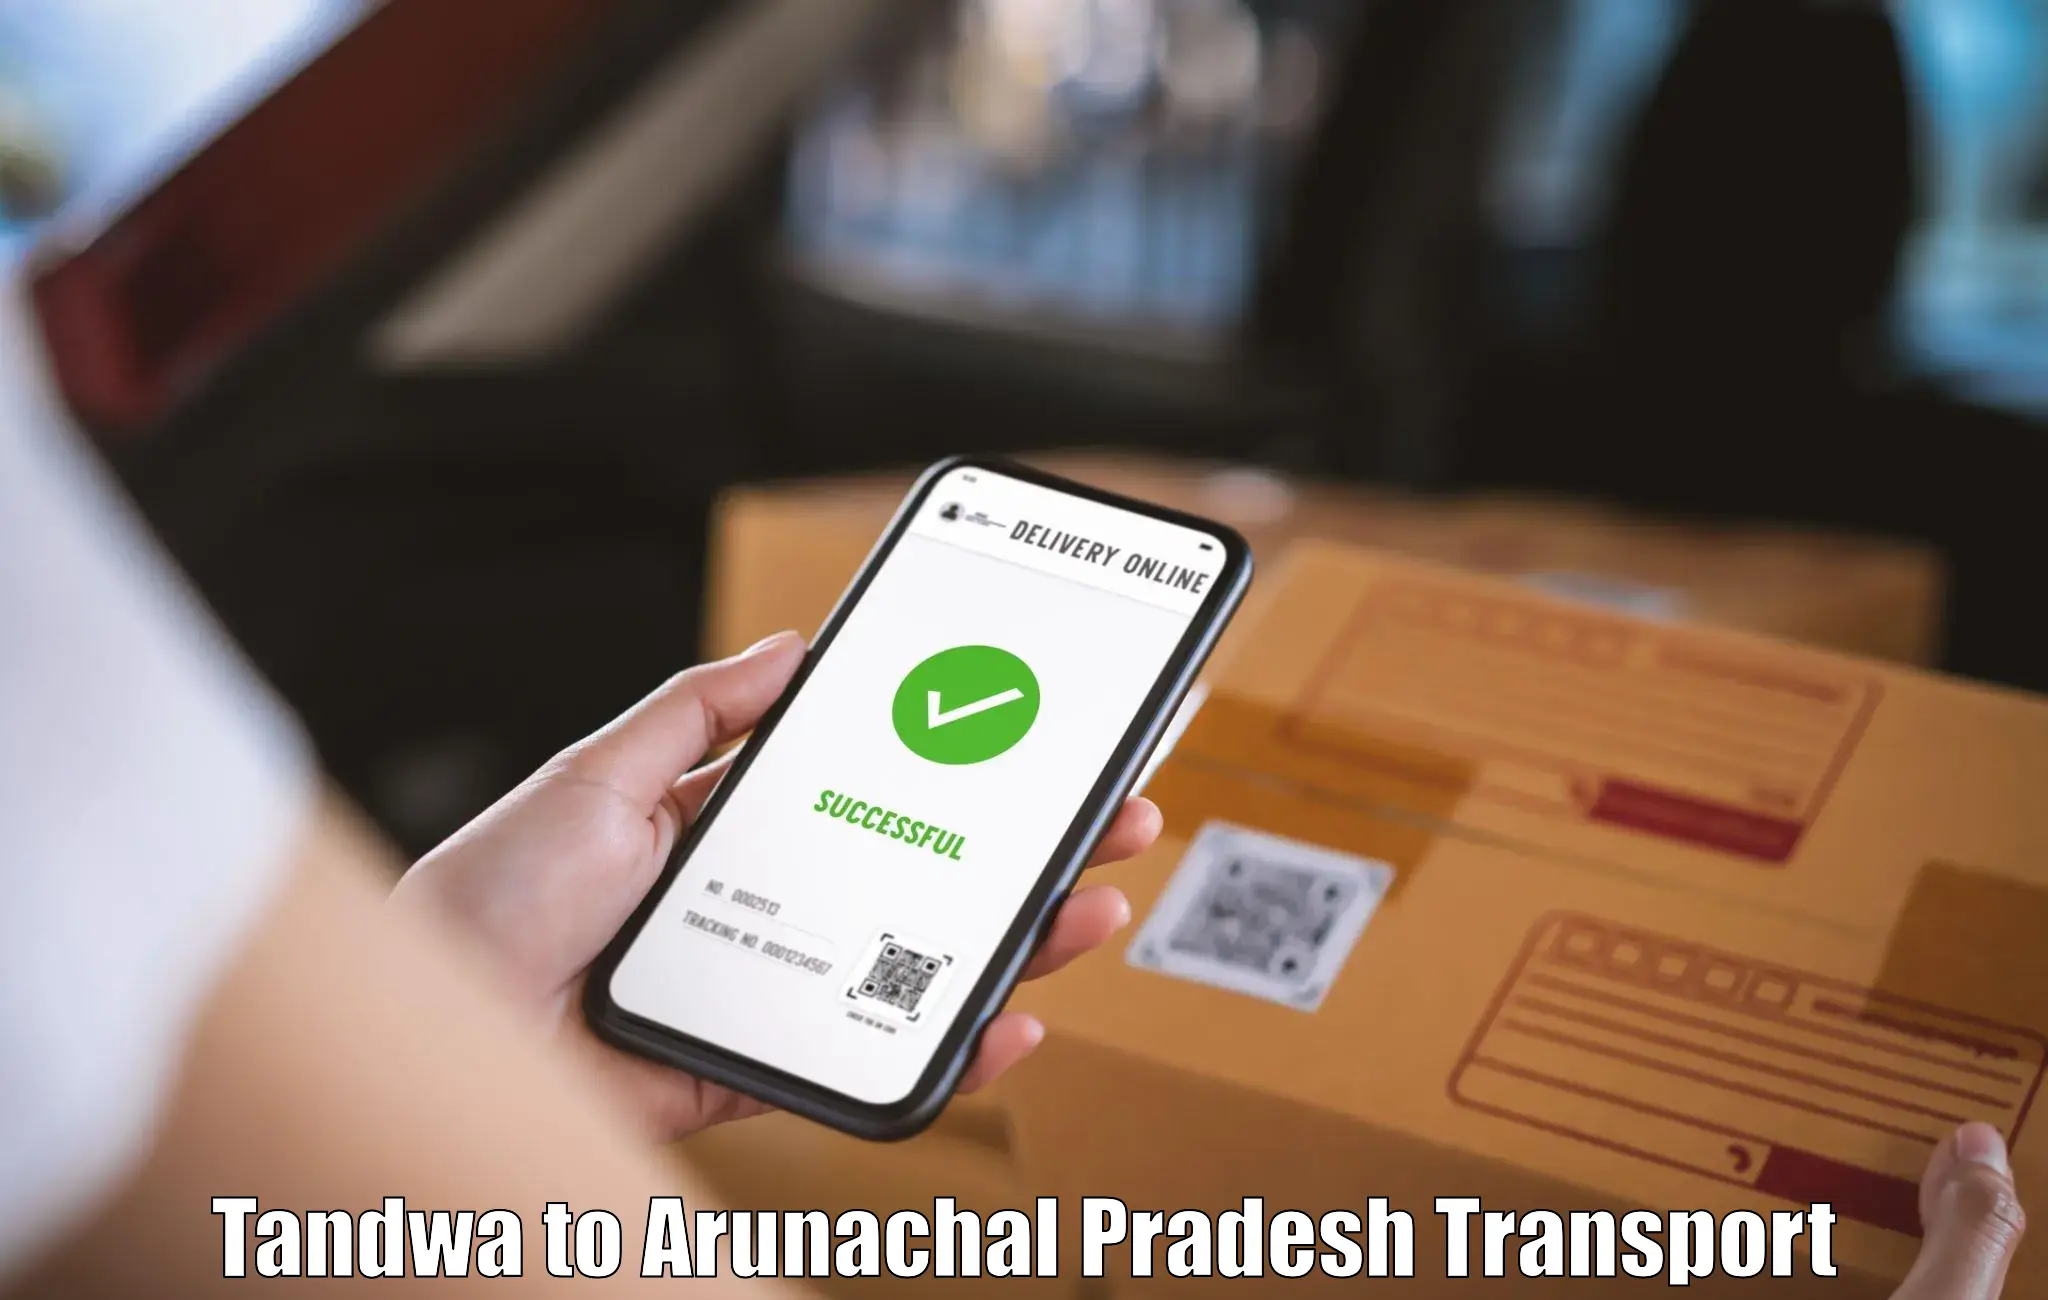 Online transport Tandwa to Arunachal Pradesh